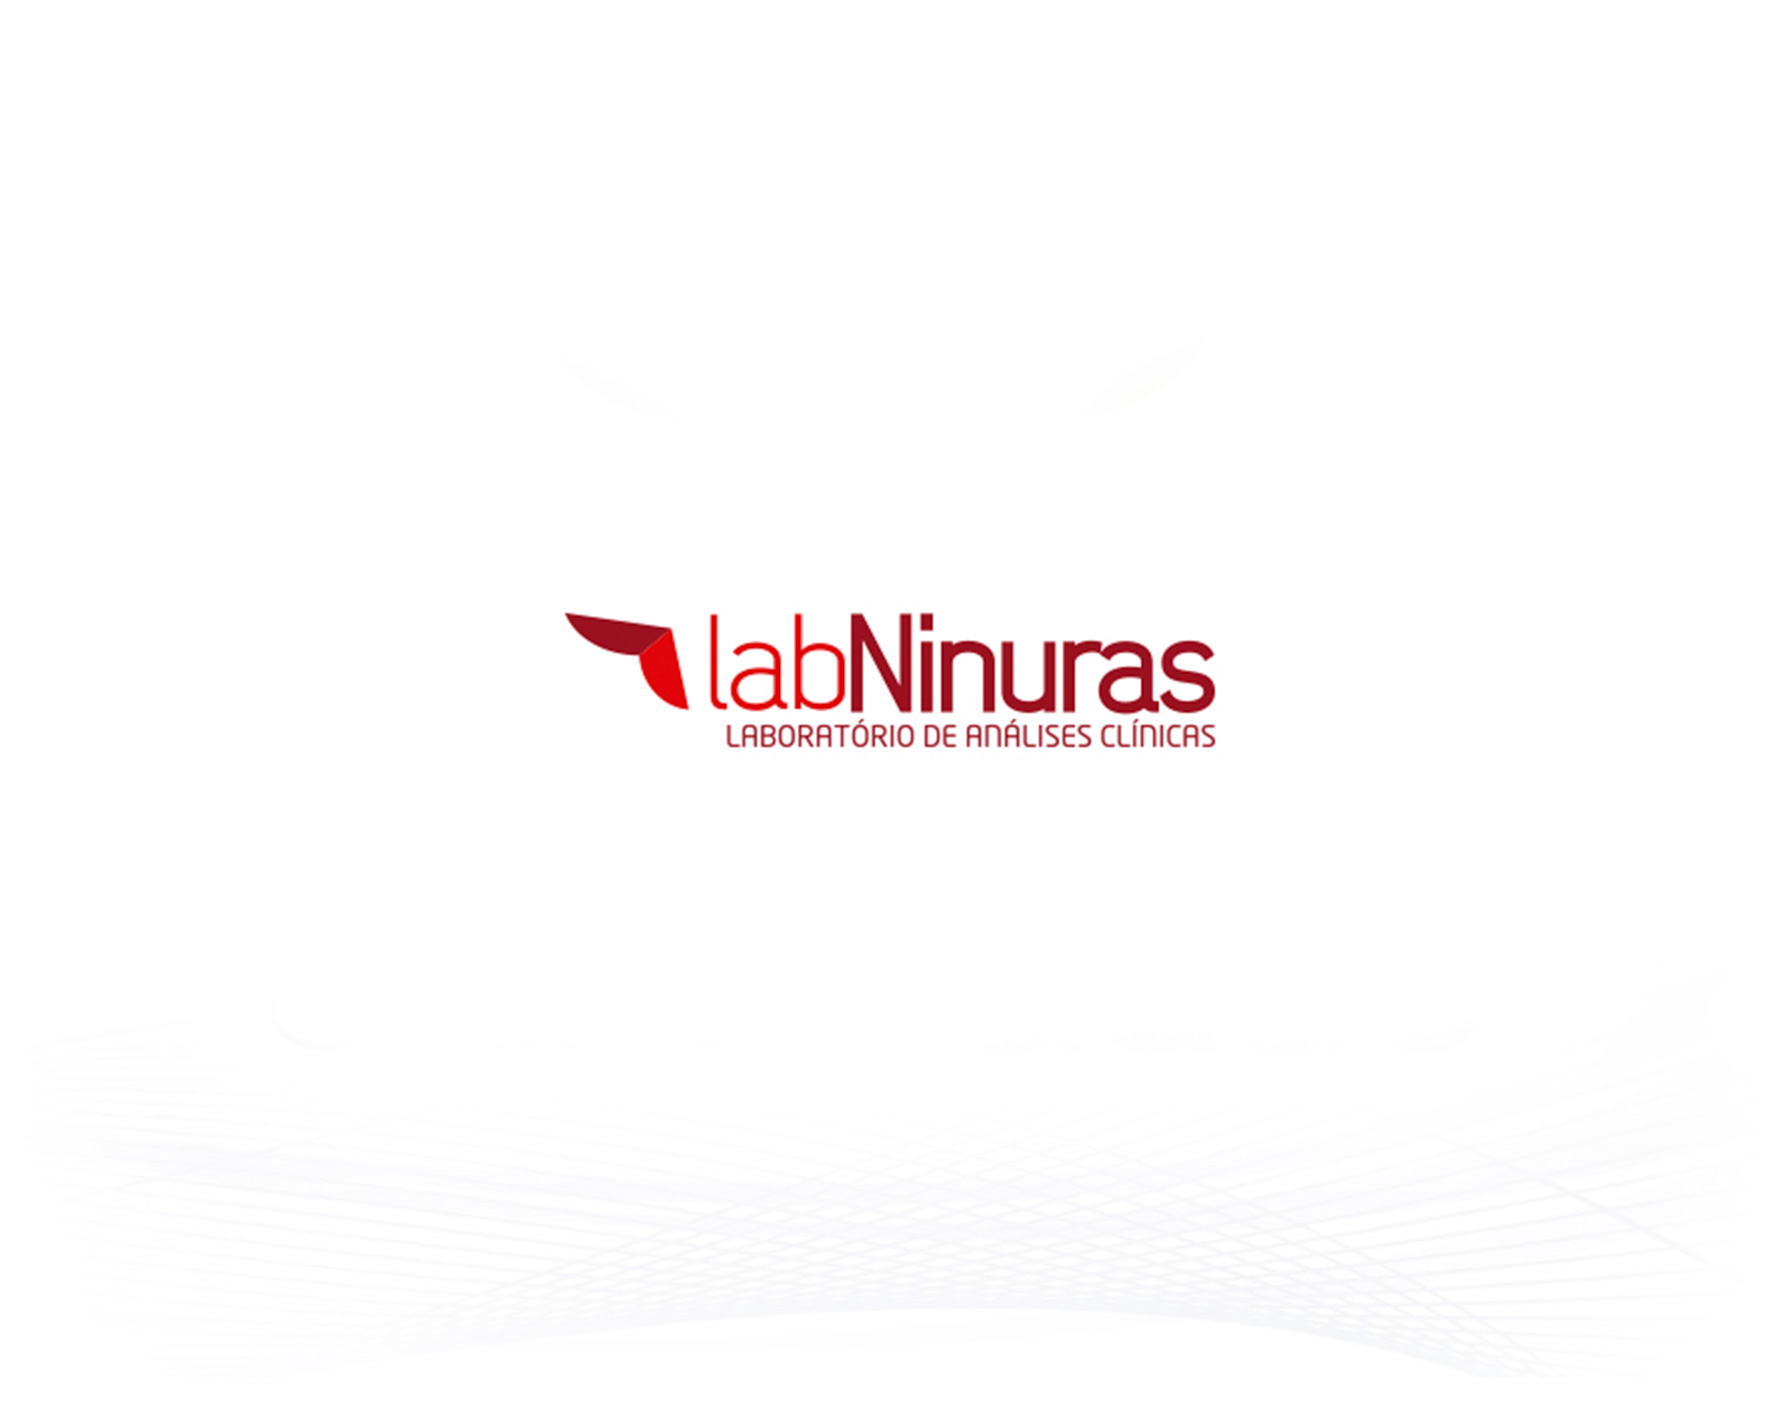 LabNinuras - Laboratório de Análises Clínicas